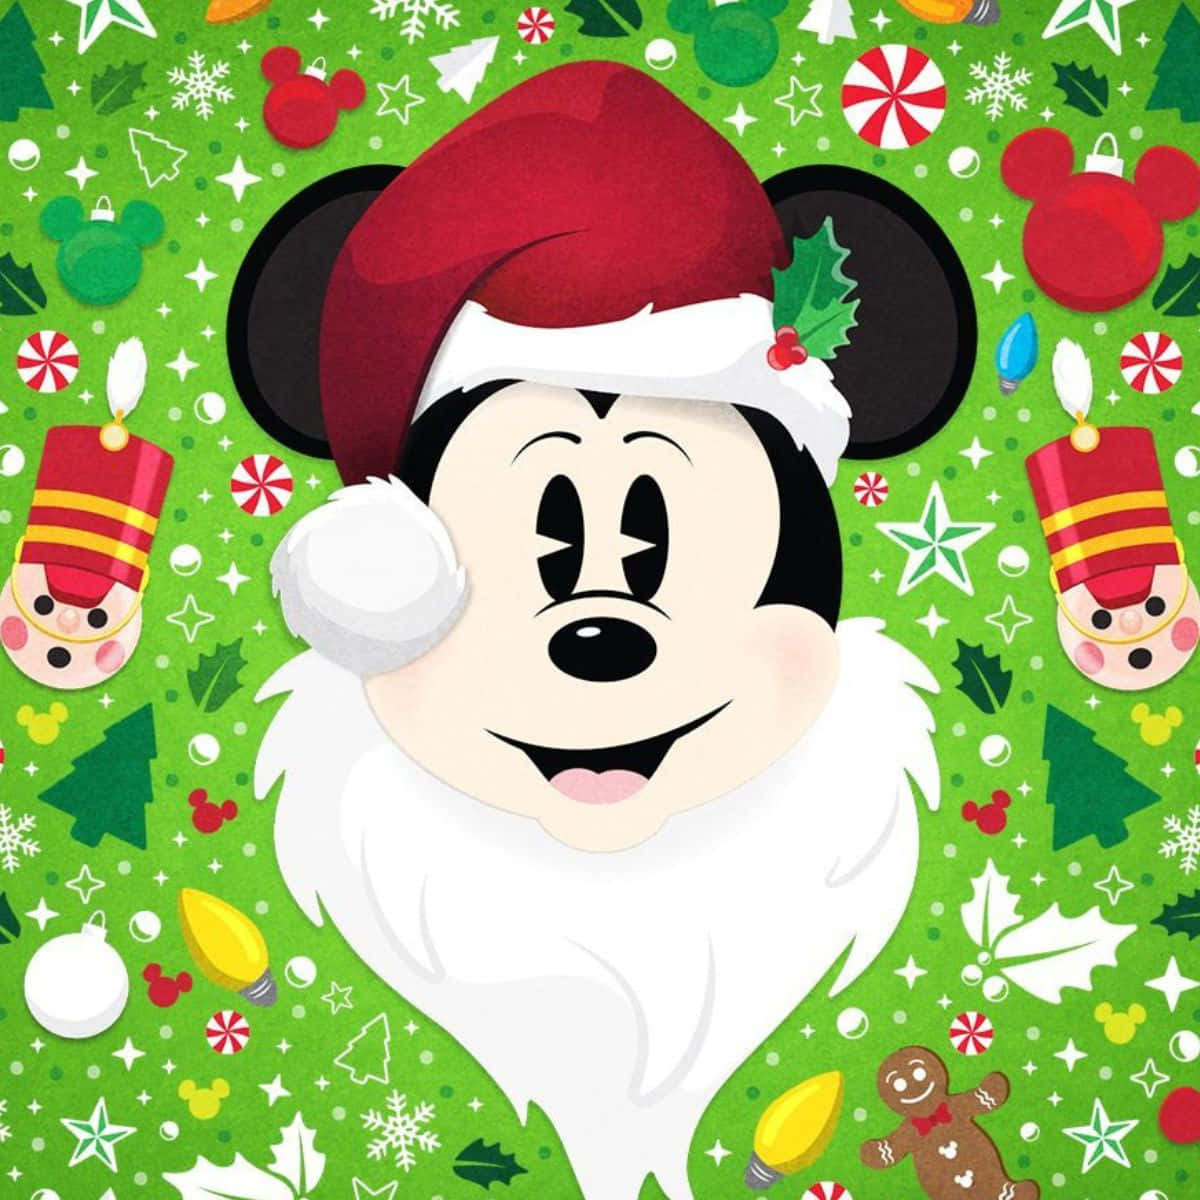 Mickeymouse Con Un Sombrero De Santa Claus Y Decoraciones Navideñas.